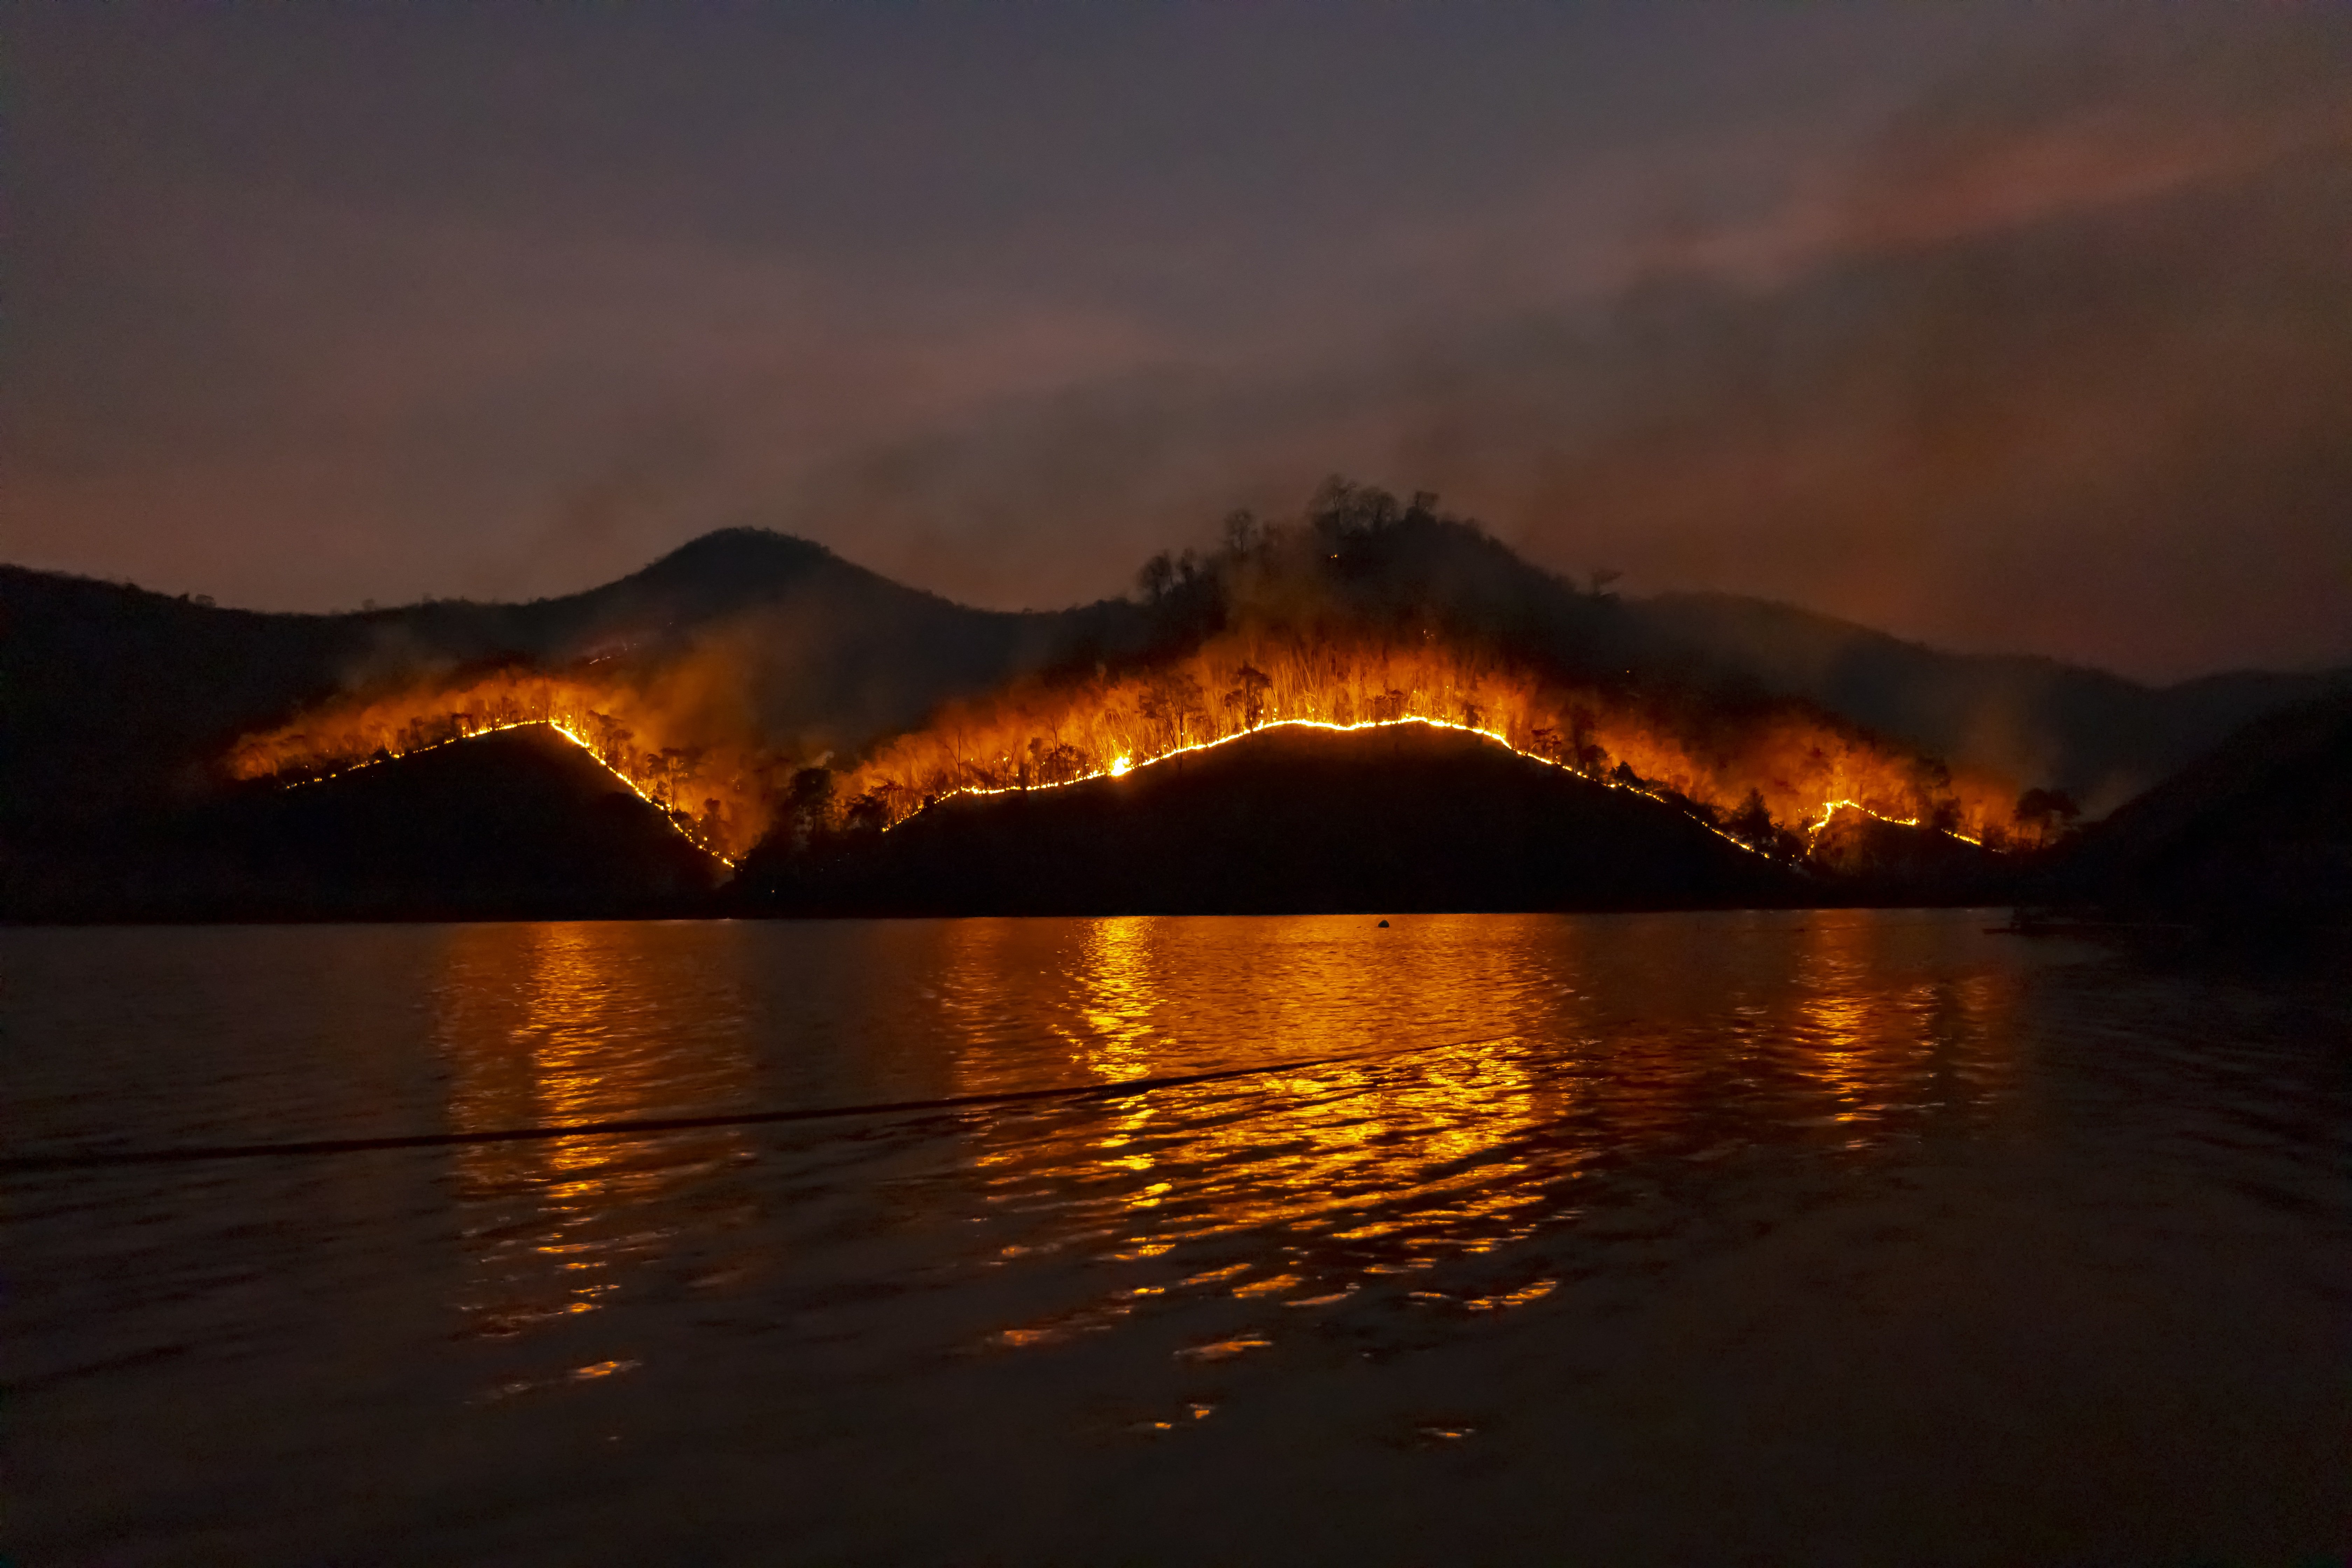 Более 170 очагов лесных пожаров ликвидировано в России за сутки